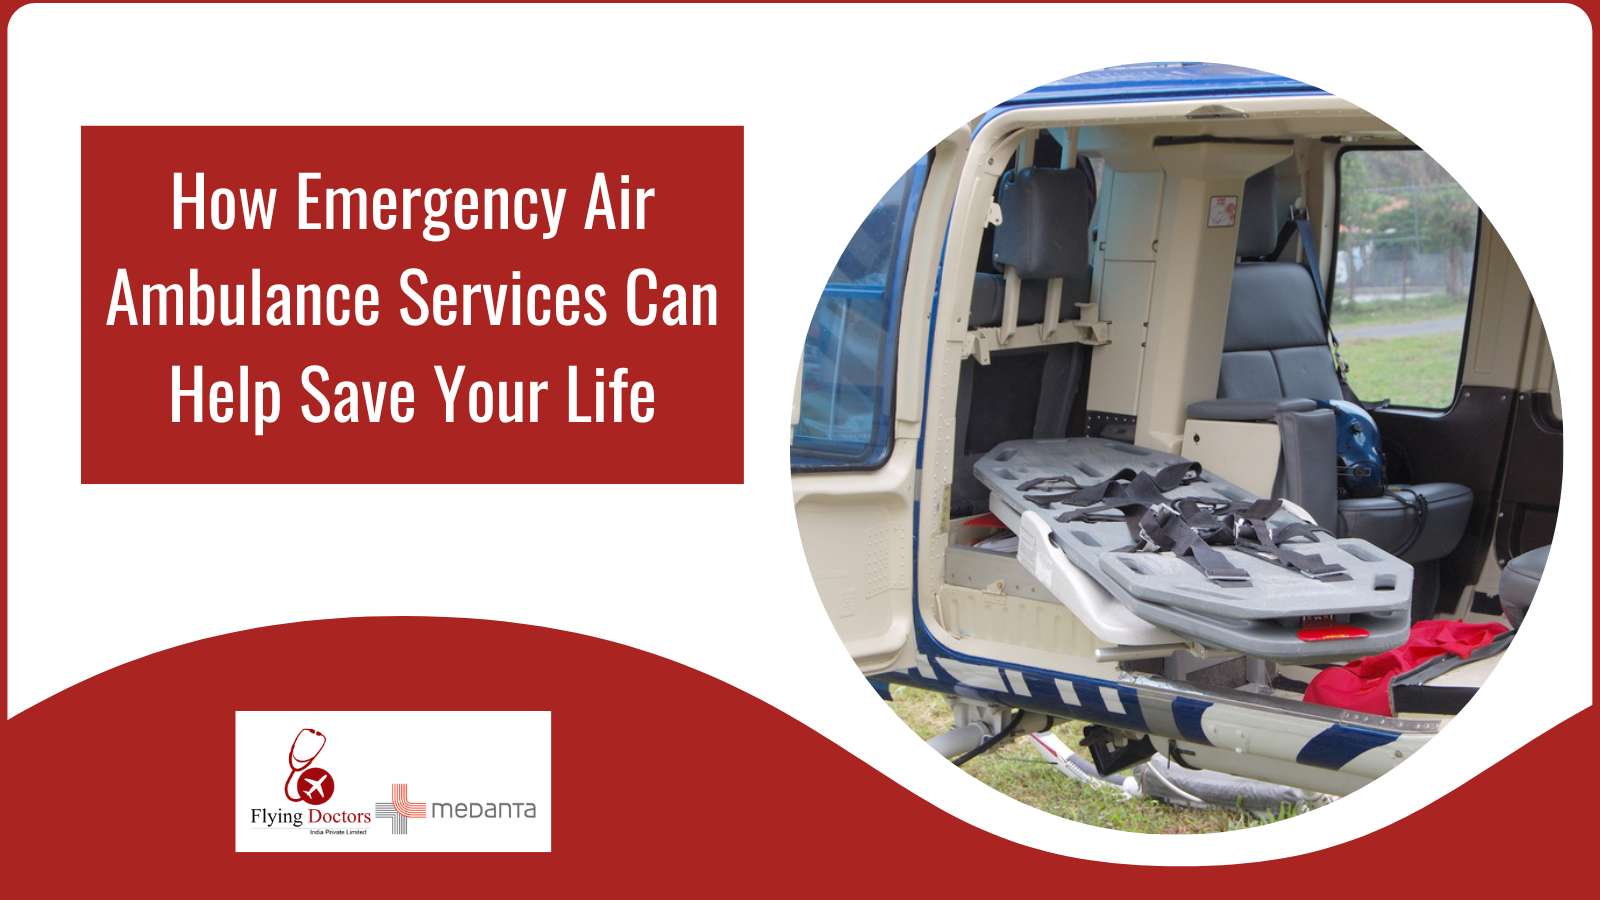 Emergency air ambulance